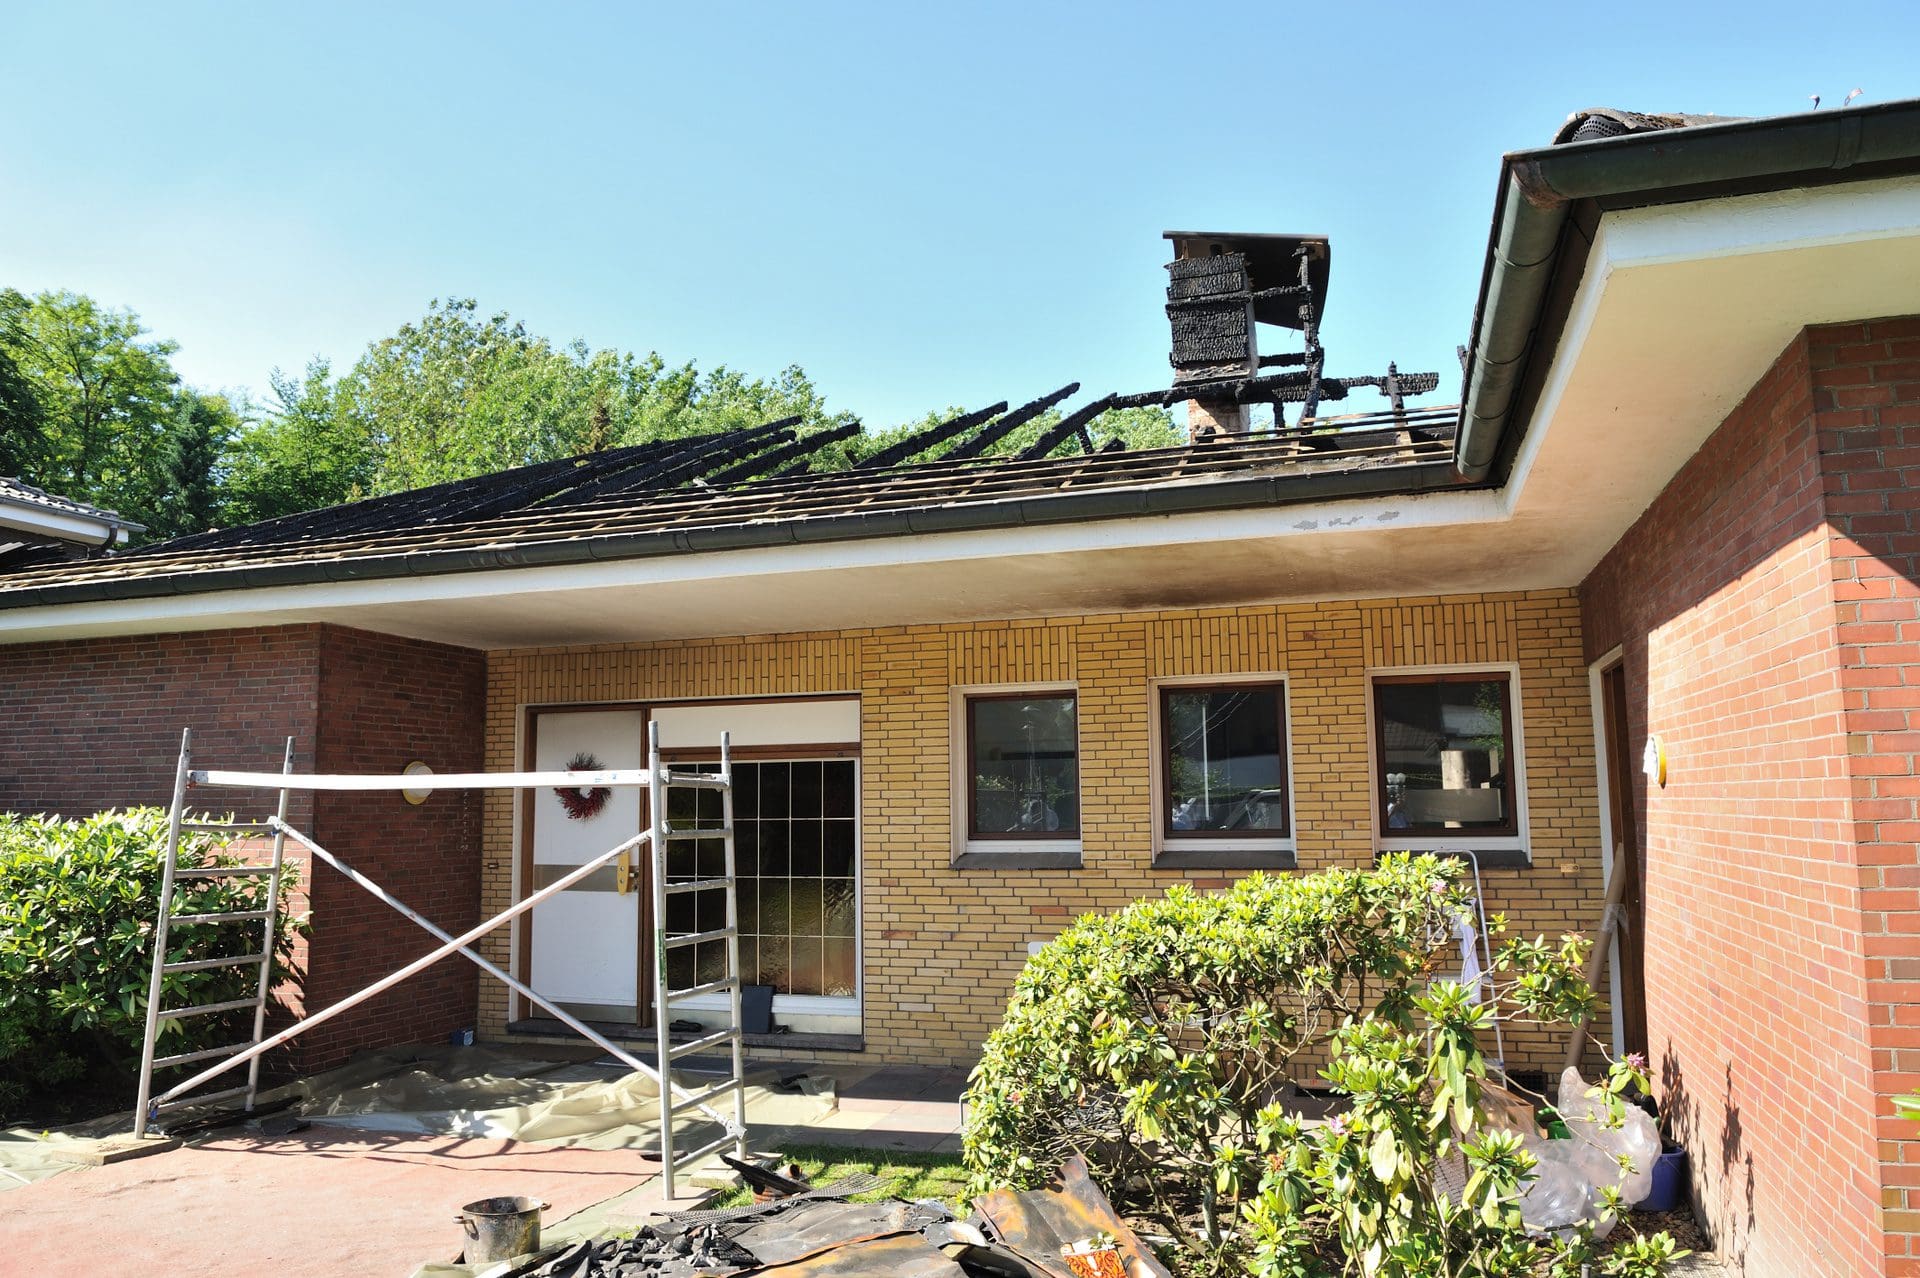 Gebäudesanierungen groß und klein: Hier wurde ein Gebäudesanierer nach einem Brandschaden gesucht, und das Haus anschließend energieeffizient modernisiert (© GordonGrand / stock.adobe.com)